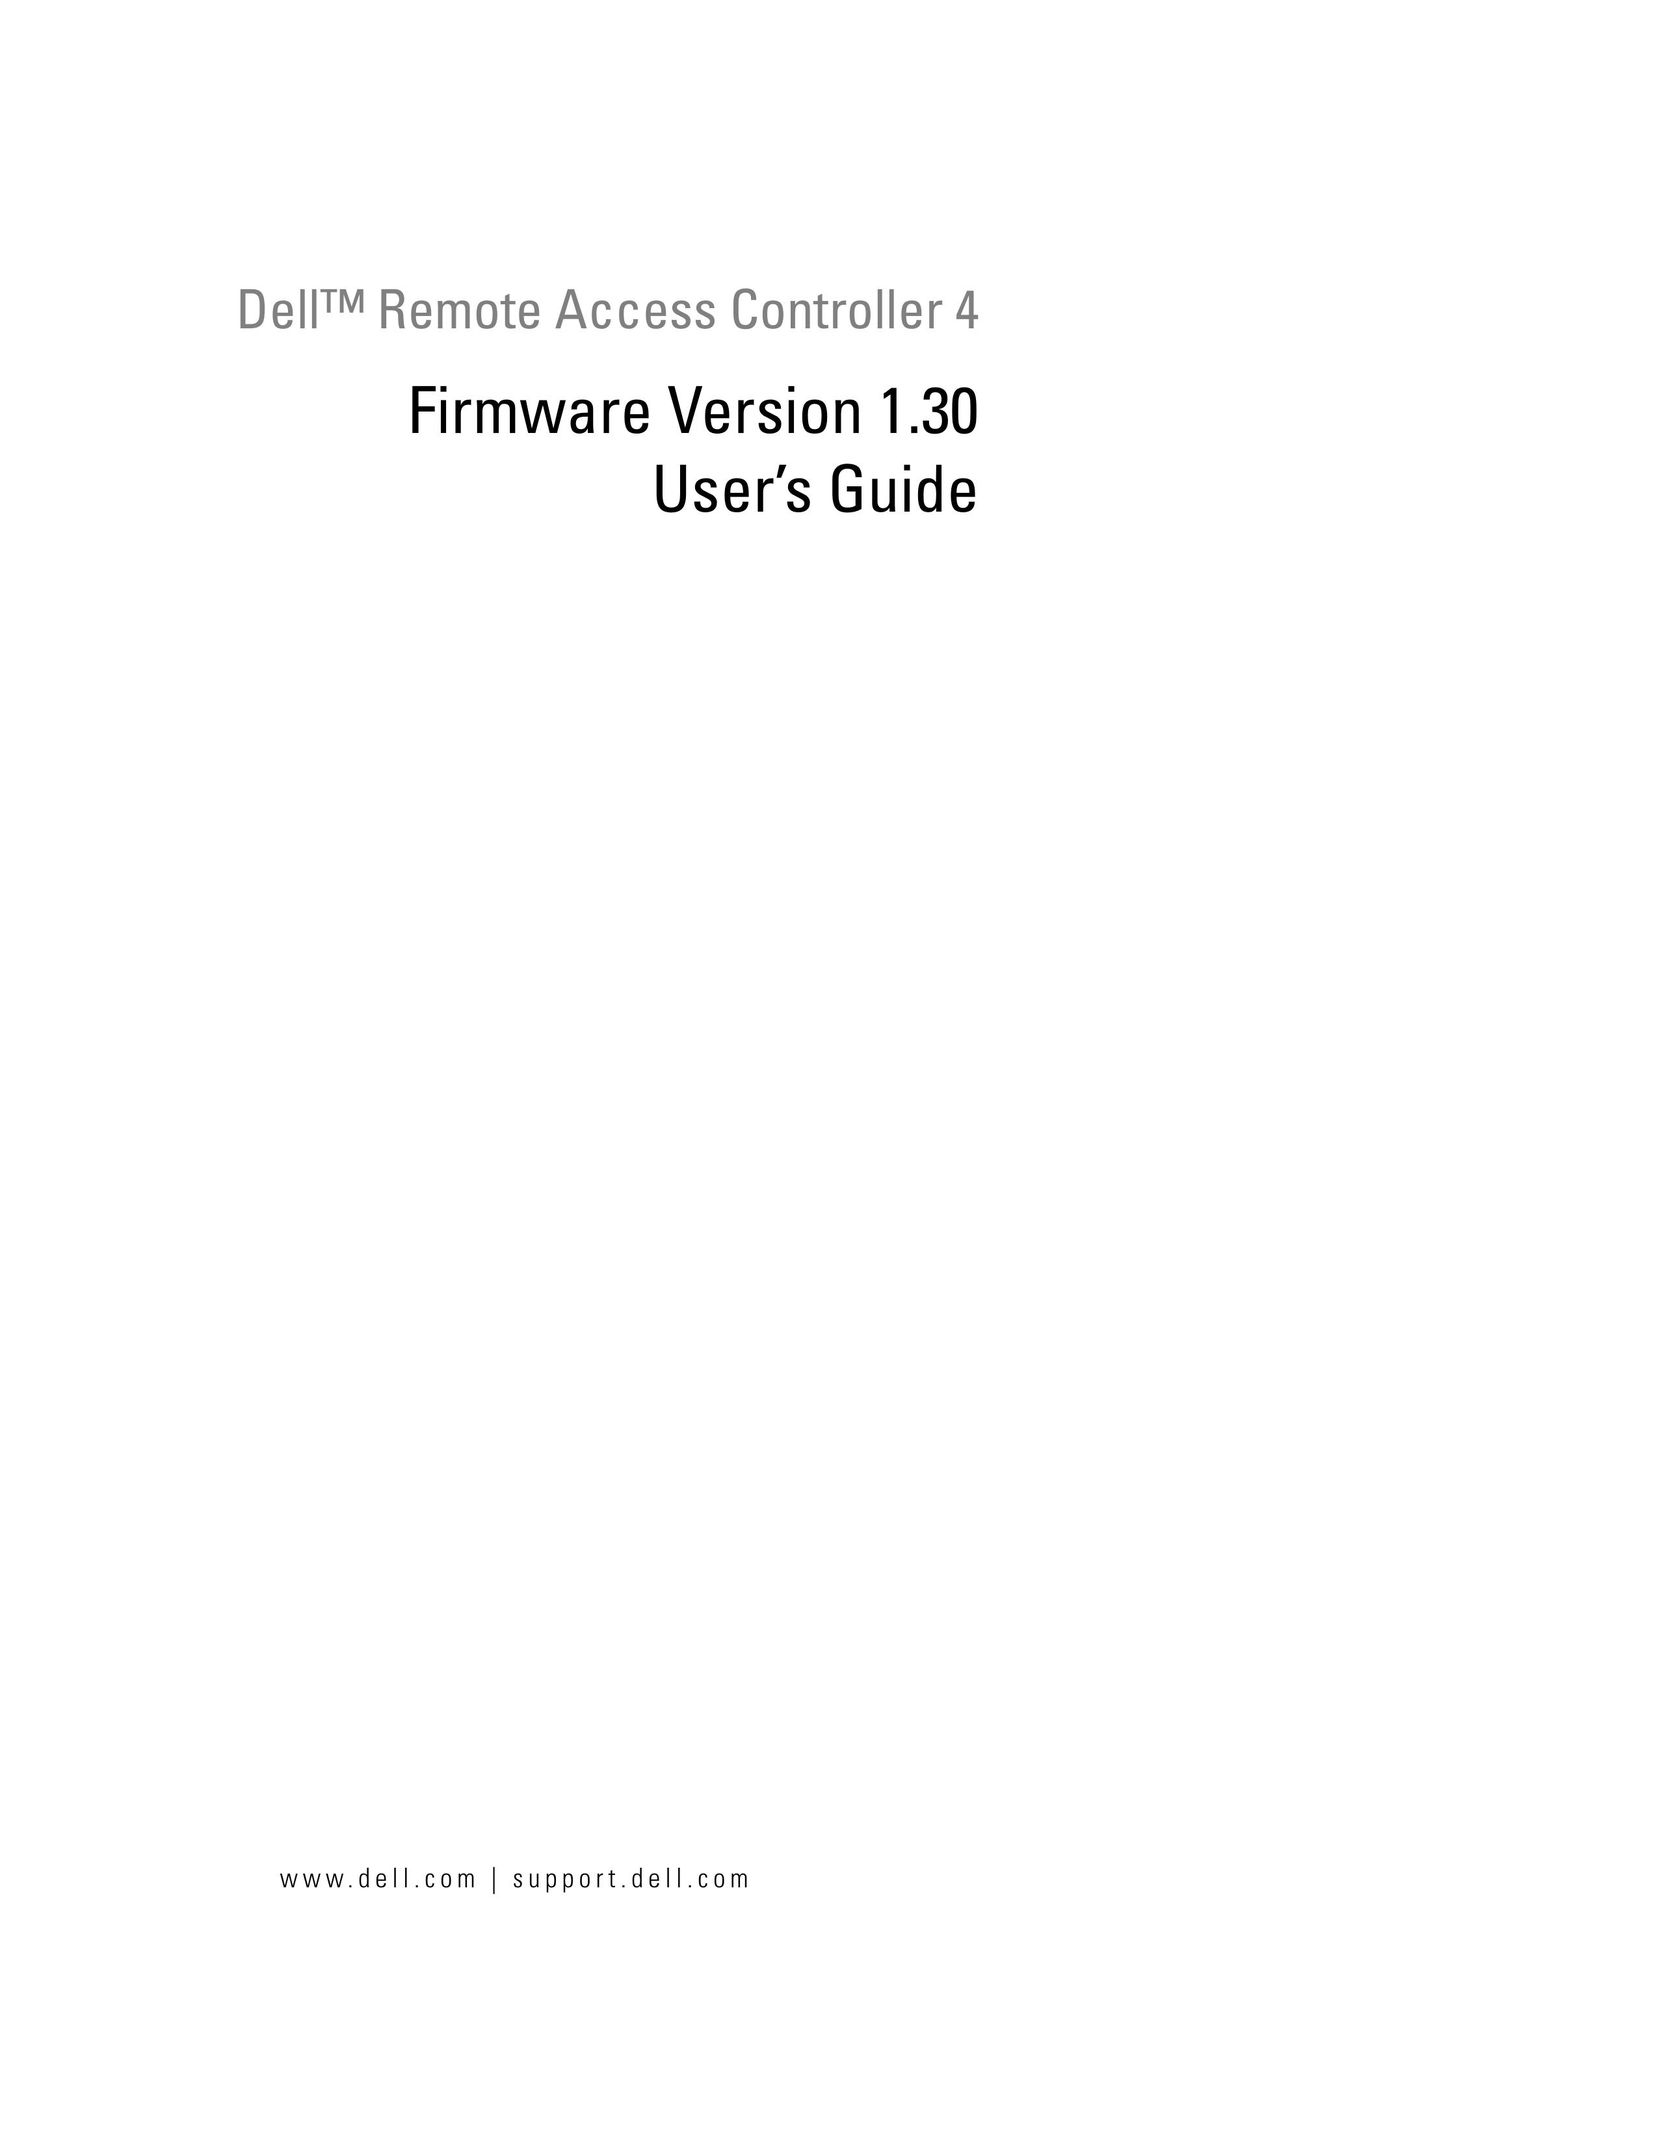 Dell Remote Access Controller 4 Firmware Version 1.30 Universal Remote User Manual